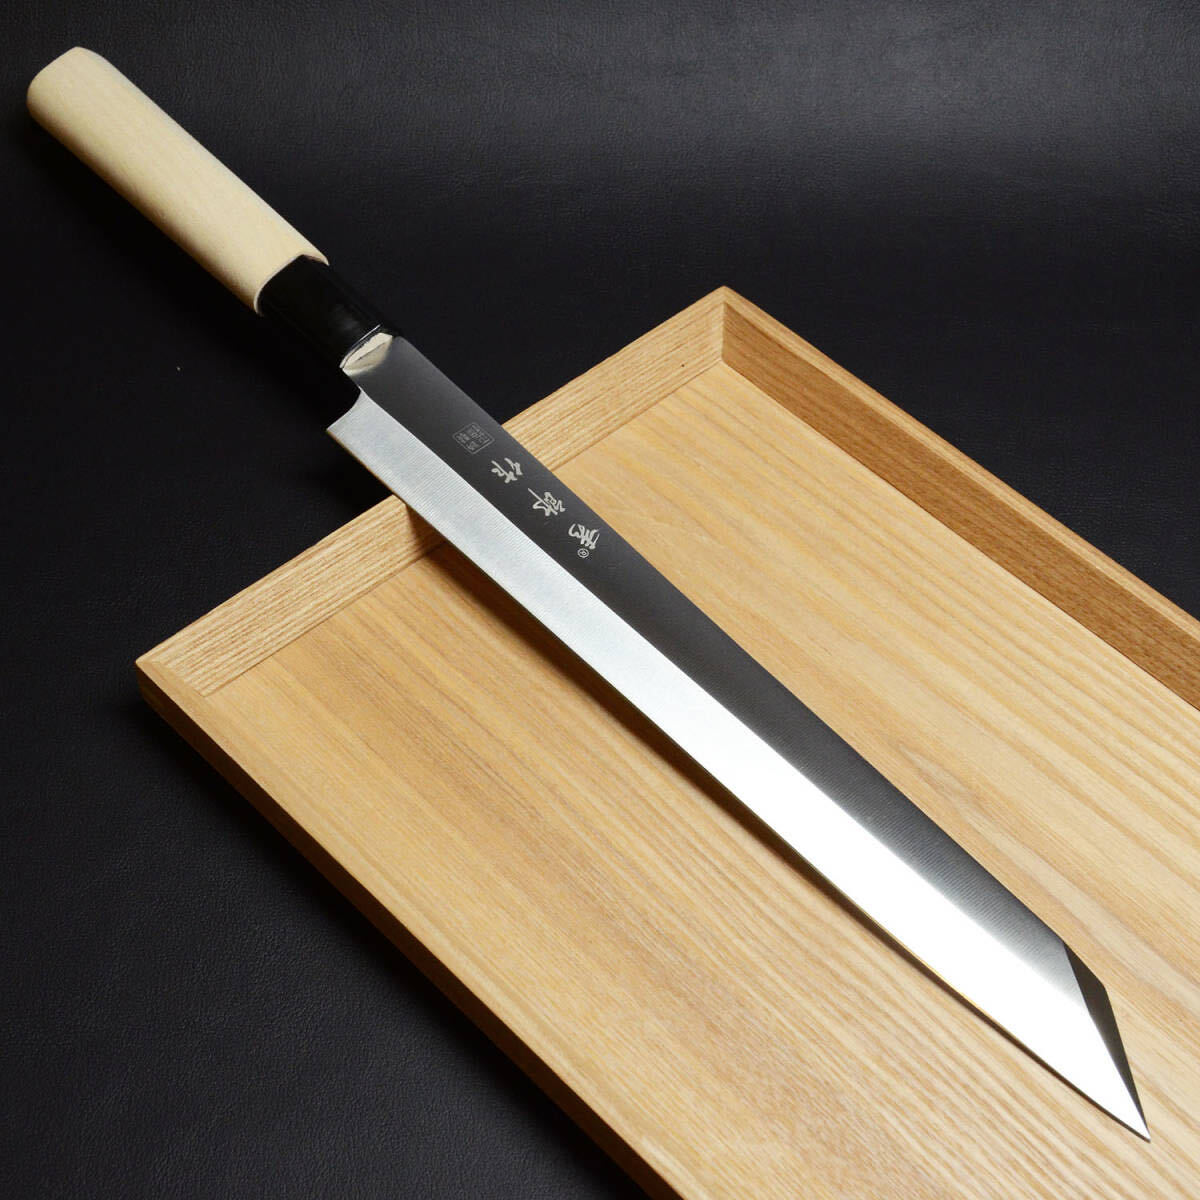 【新品】切付柳刃包丁 9寸 270mm ステンレス鋼 料理包丁 刺身包丁 和包丁の画像1